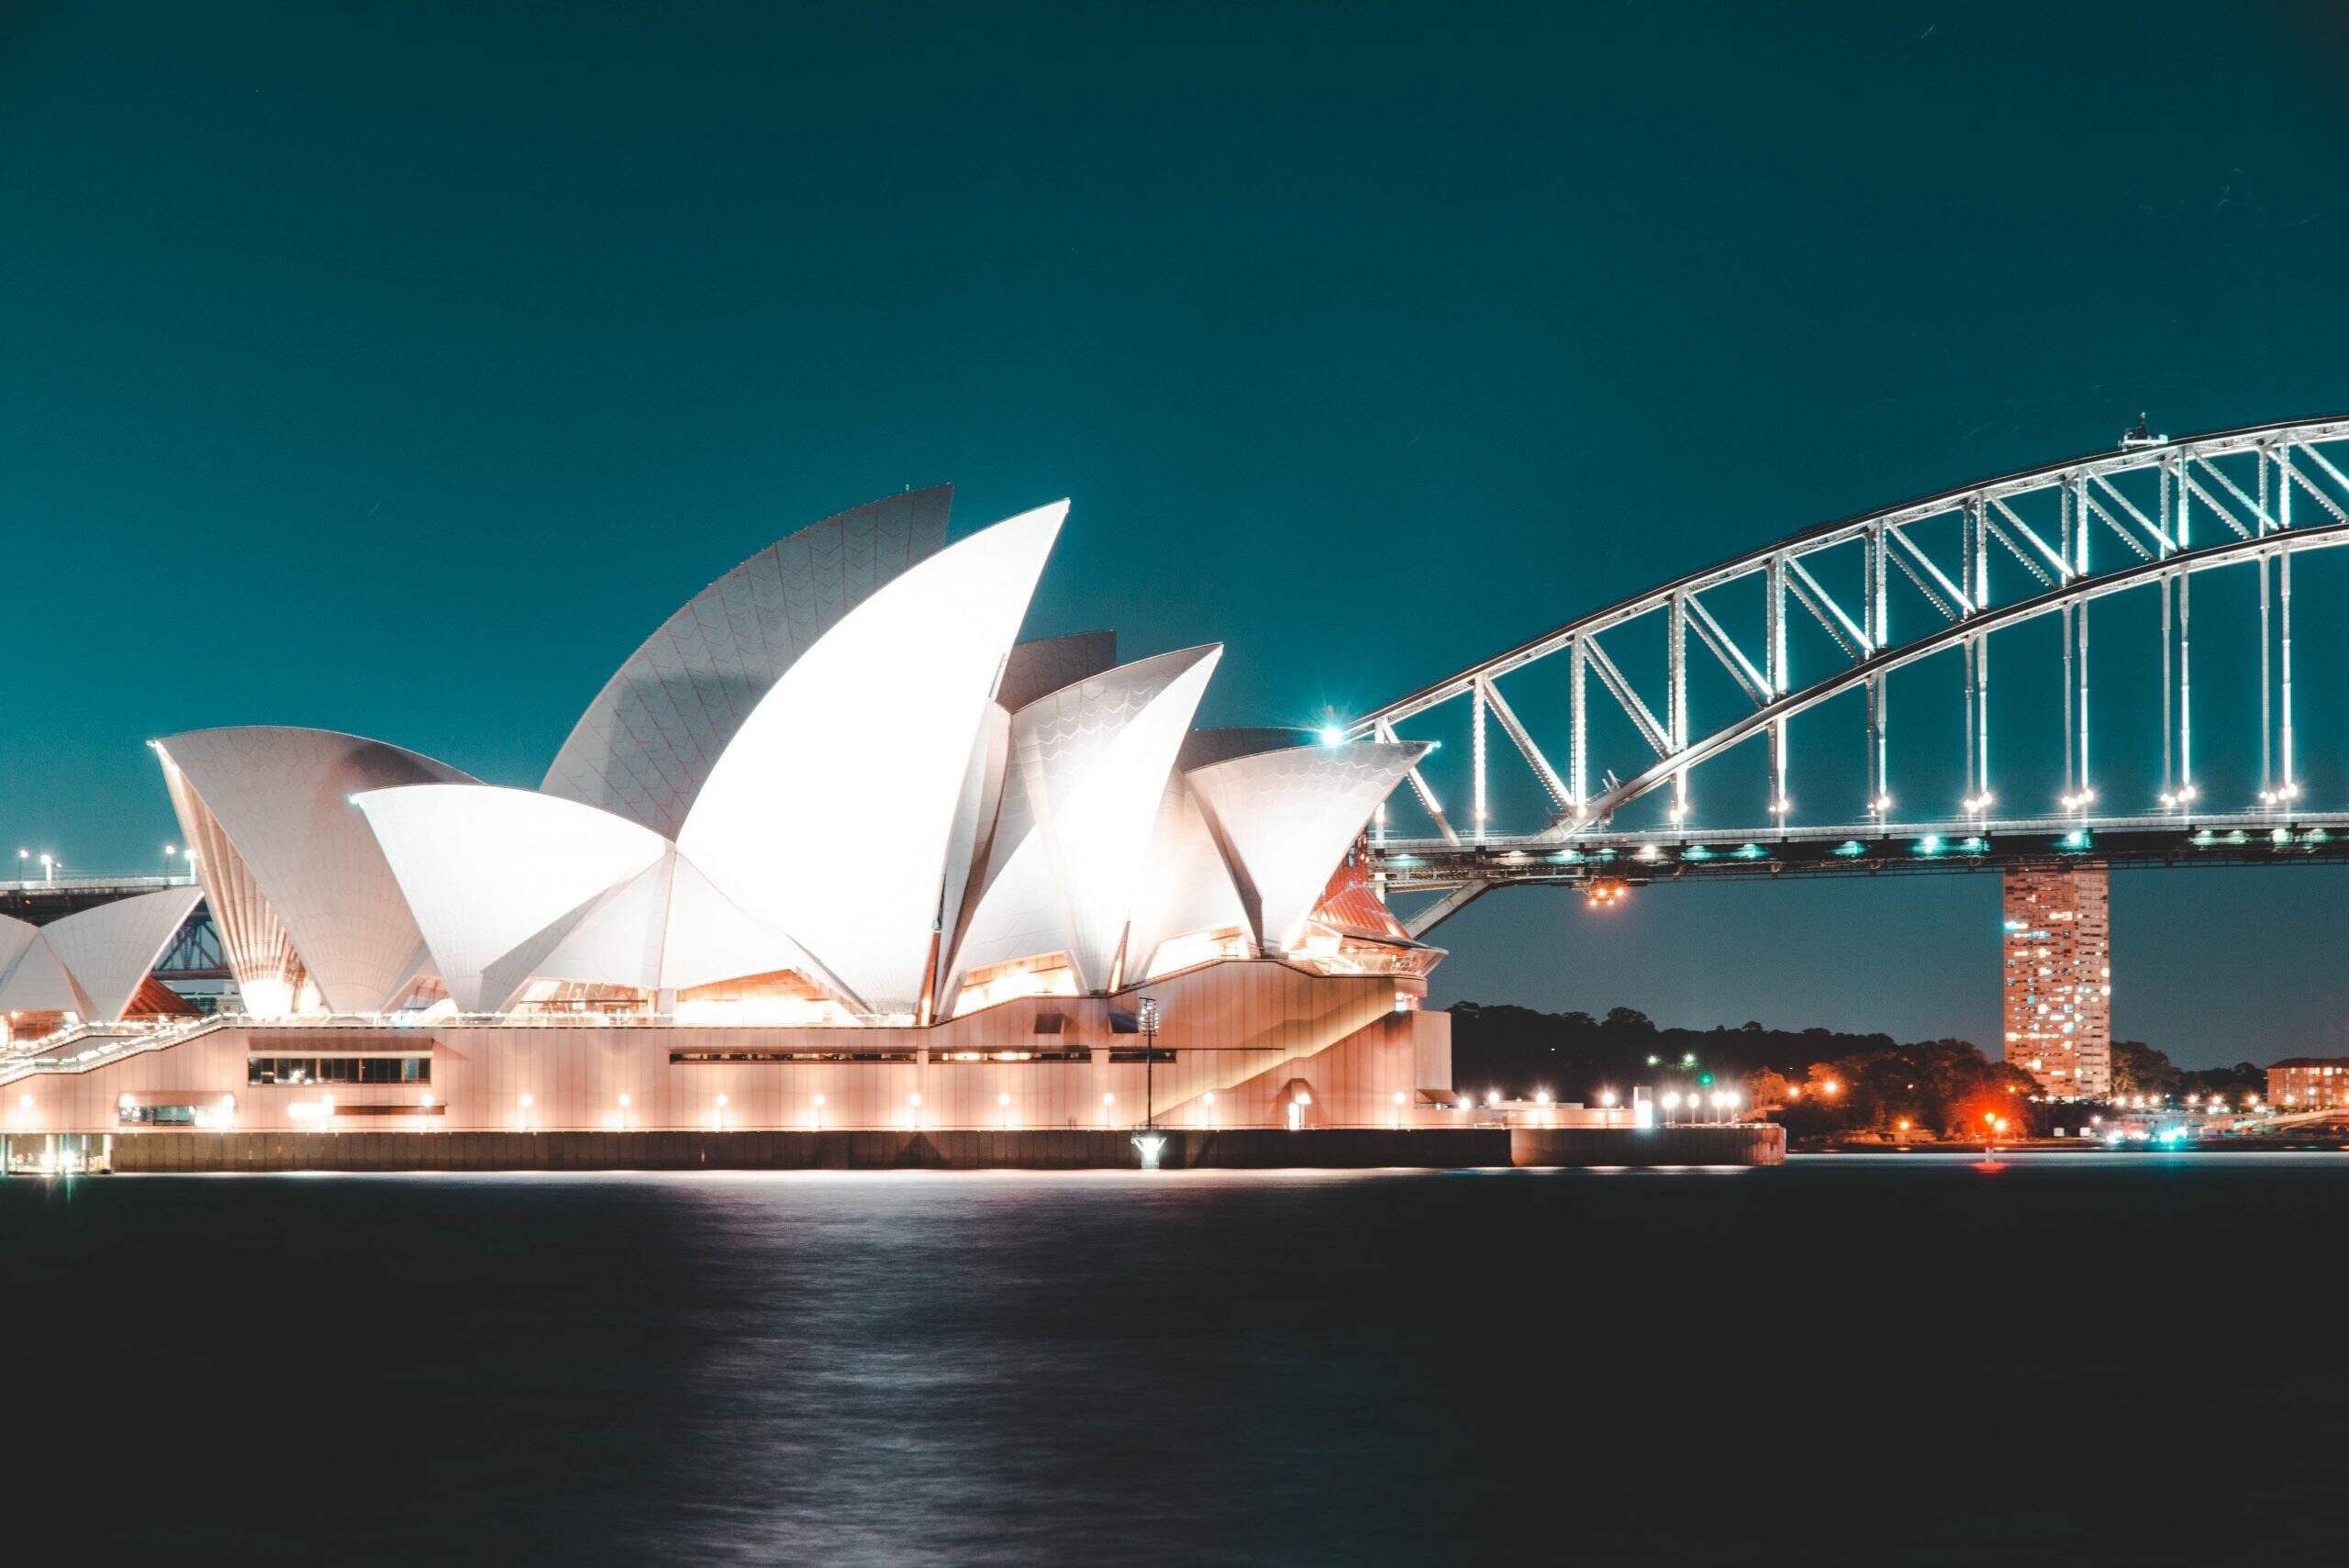 Lugares mais hitechs do mundo: Sydney - Foto de Rijan Hamidovic no Pexels